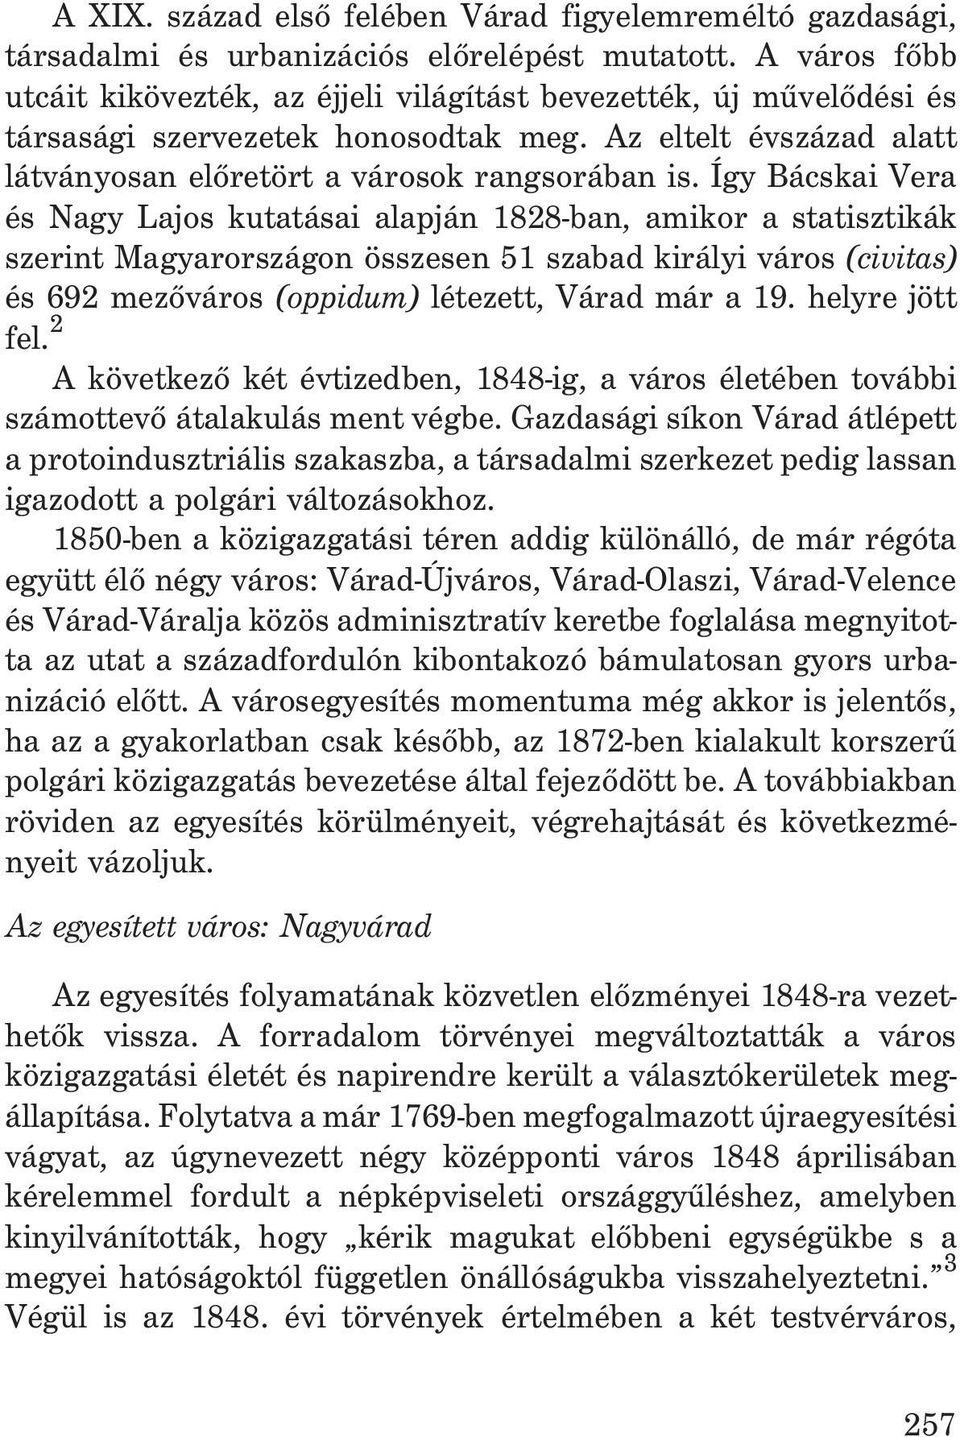 Így Bácskai Vera és Nagy Lajos kutatásai alapján 1828-ban, amikor a statisztikák szerint Magyarországon összesen 51 szabad királyi város (civitas) és 692 mezõváros (oppidum) létezett, Várad már a 19.